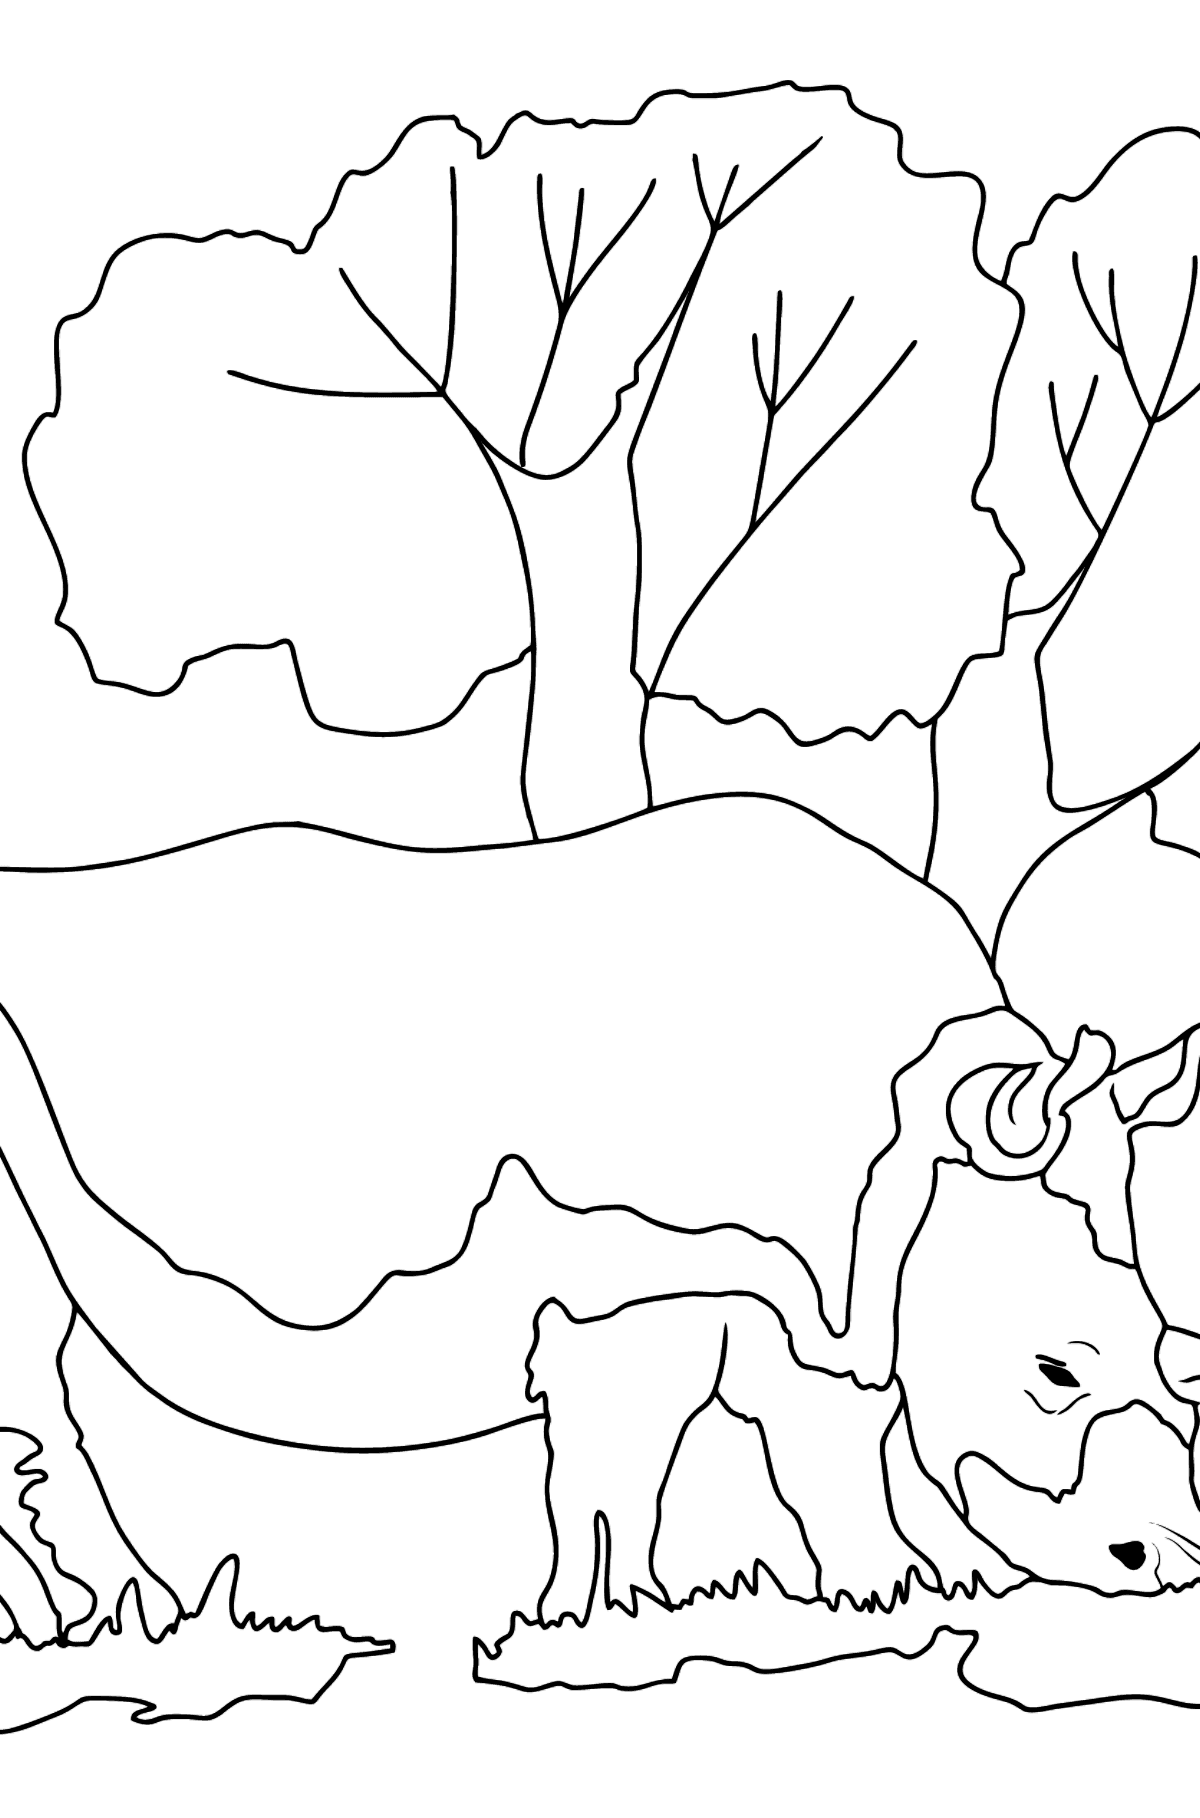 Desen de colorat bun rinocer - Desene de colorat pentru copii